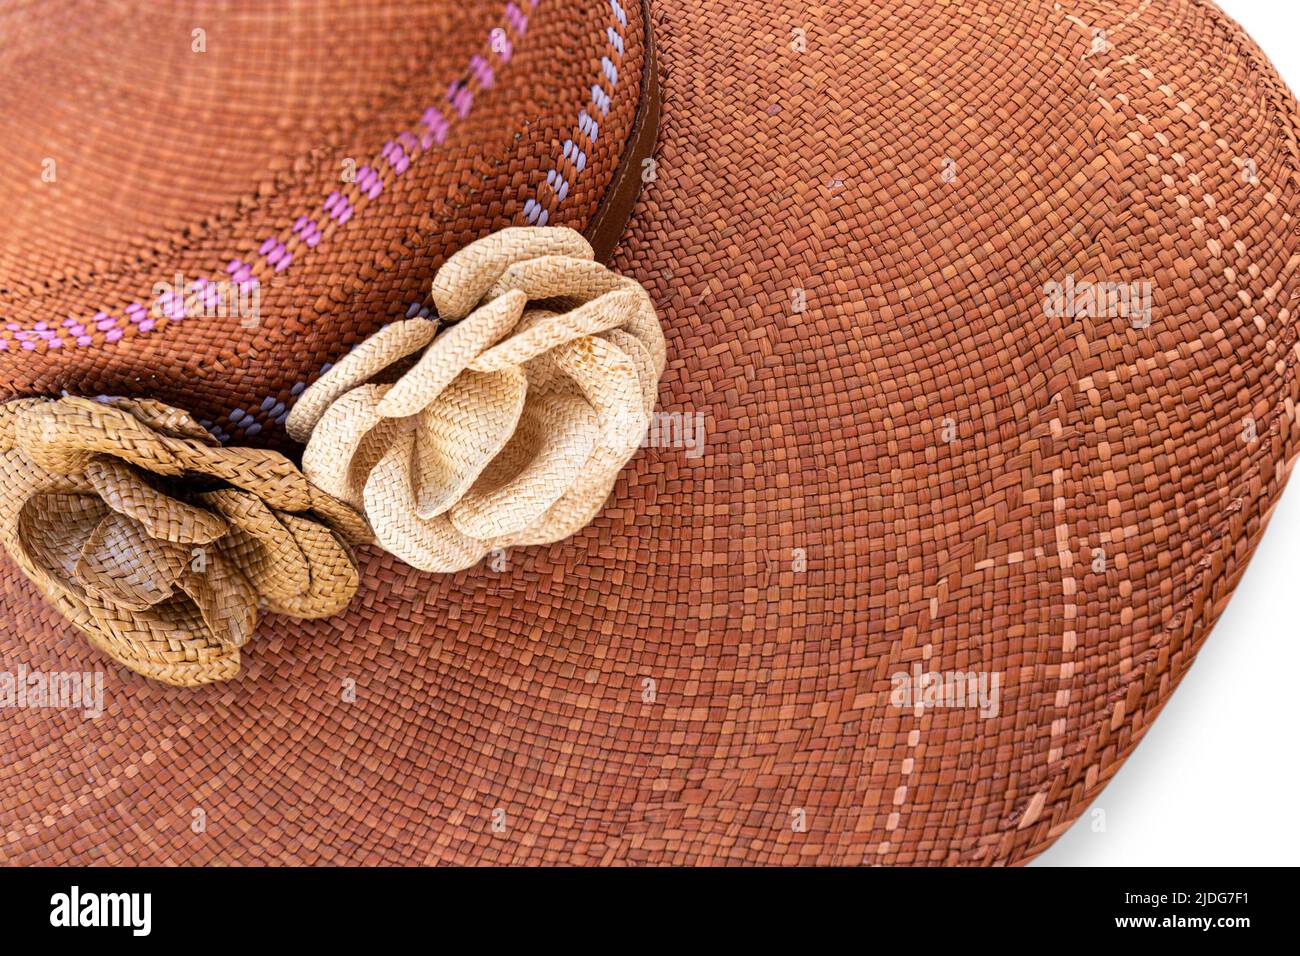 Sombrero De Panamá Del Ecuadorian De La Mujer O Straw Hats Que Teje,  Ecuador Imagen de archivo editorial - Imagen de cultural, handmade:  142988394